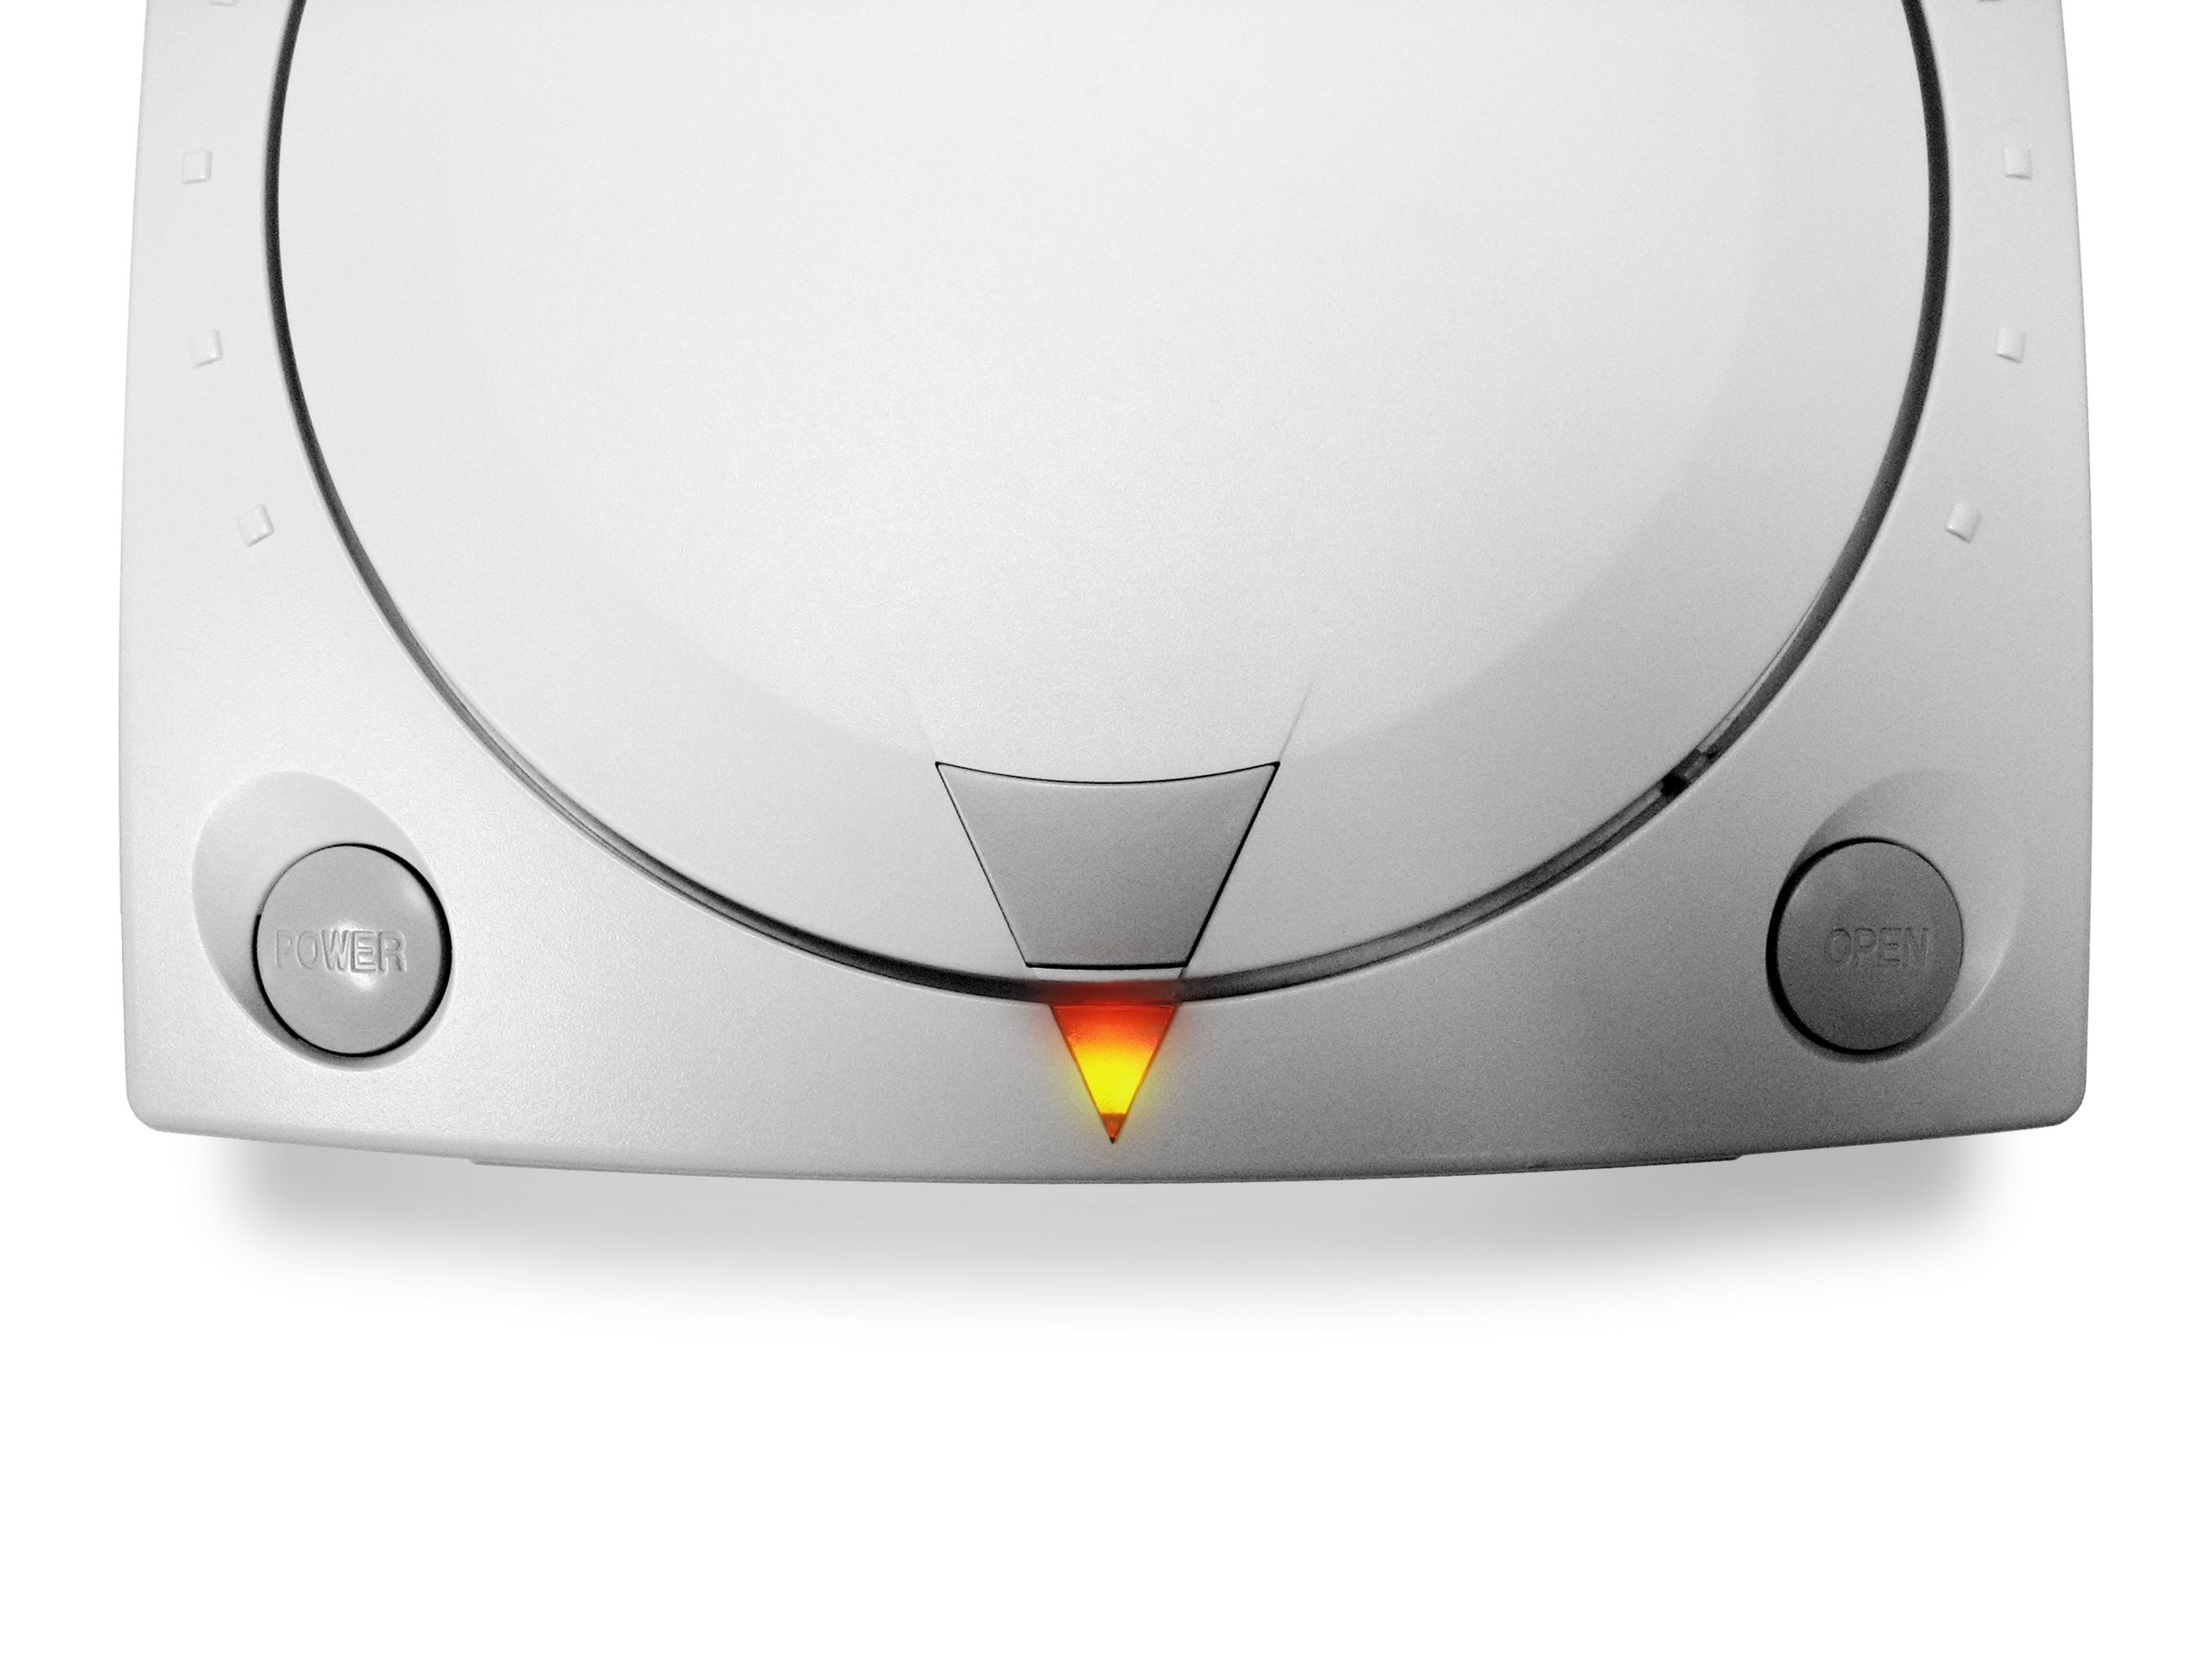 2560x1920 Dreamcast pics